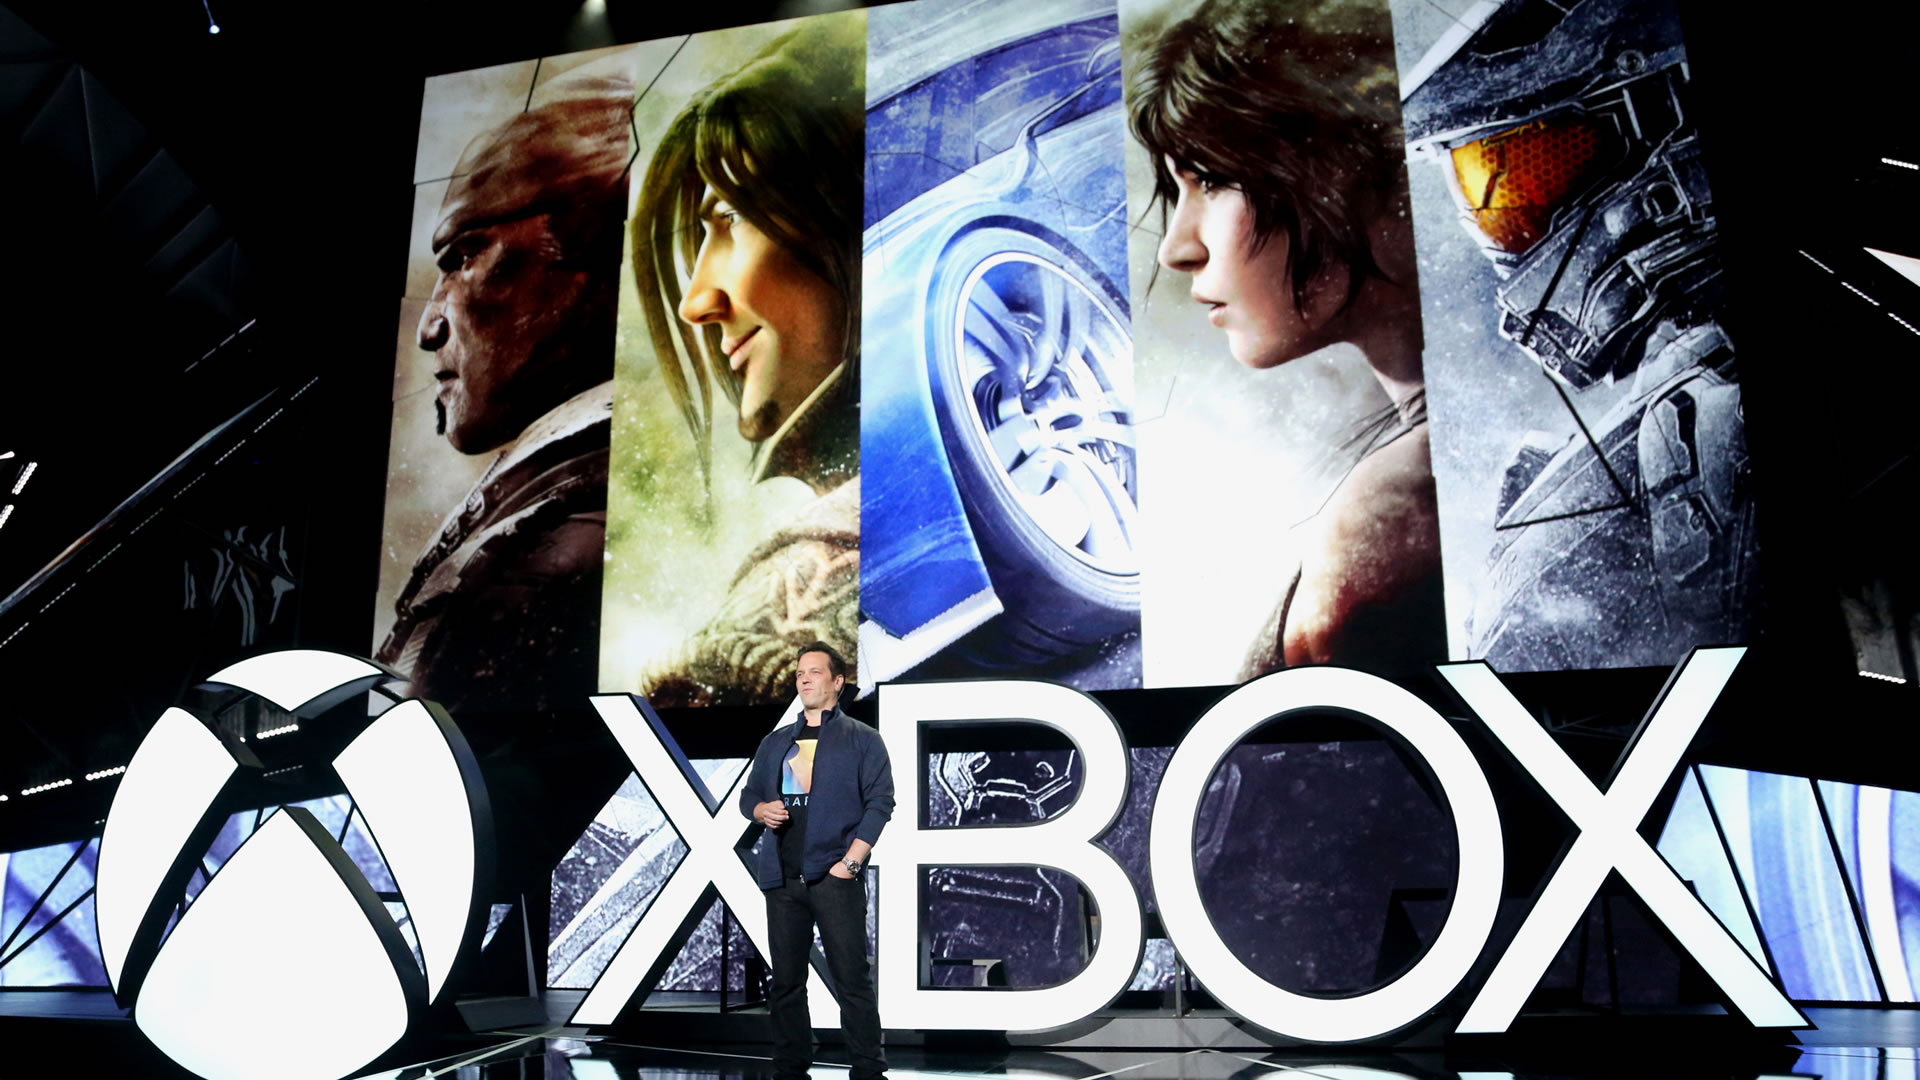 Cinque anni di Xbox One